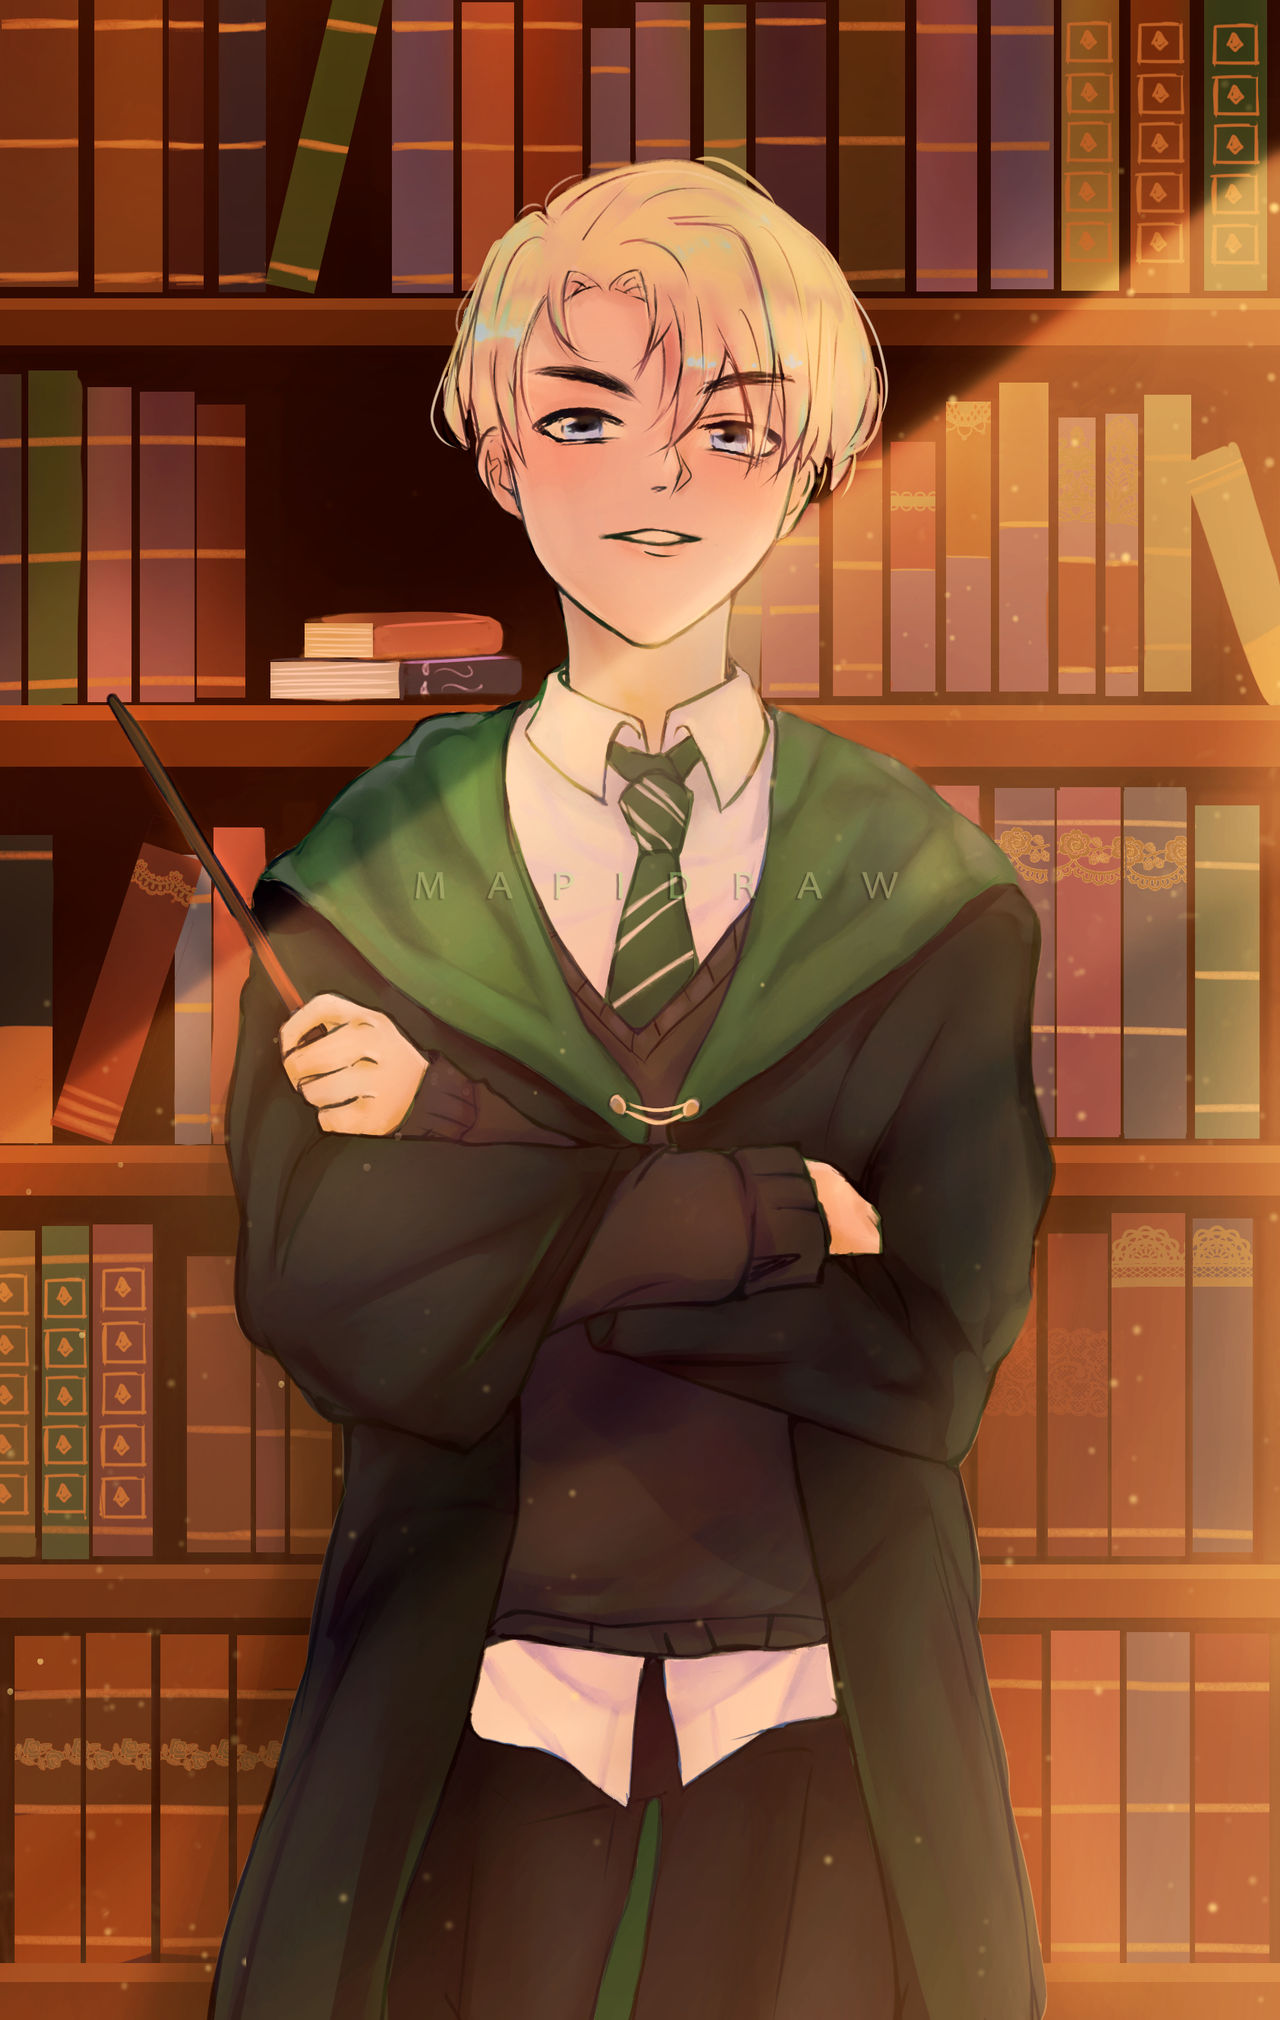 Canvas print Harry Potter - Draco Malfoy